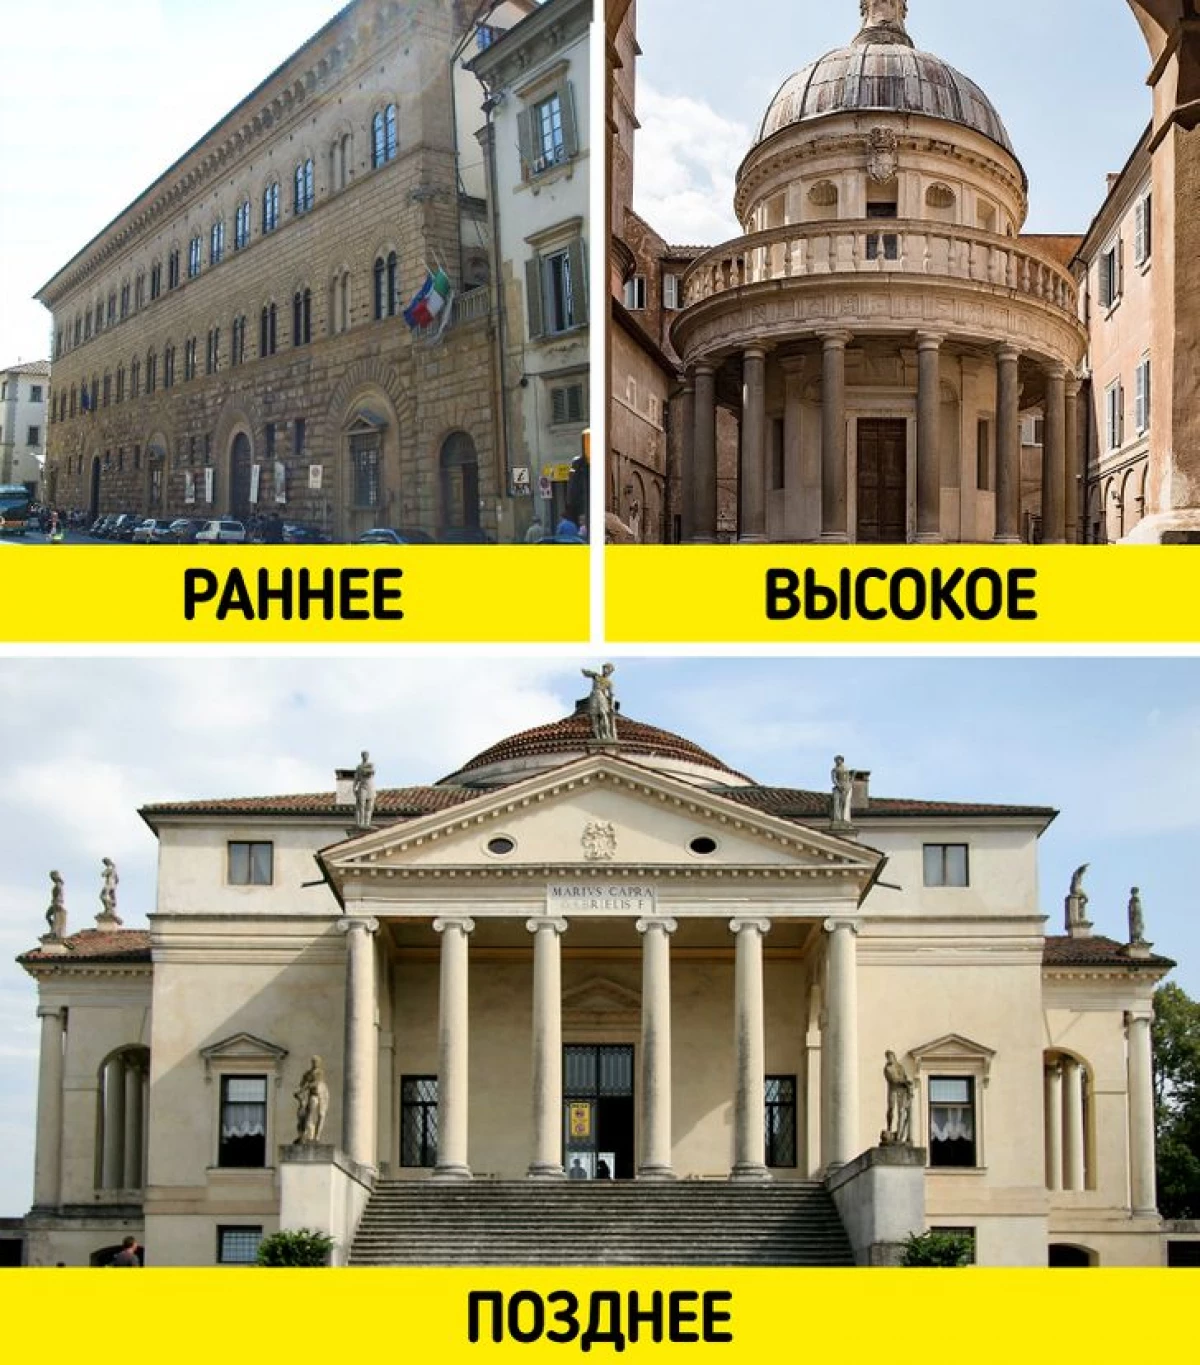 6 traditionelle architektonische Stile, die in verschiedenen Ländern völlig anders aussehen 1748_4